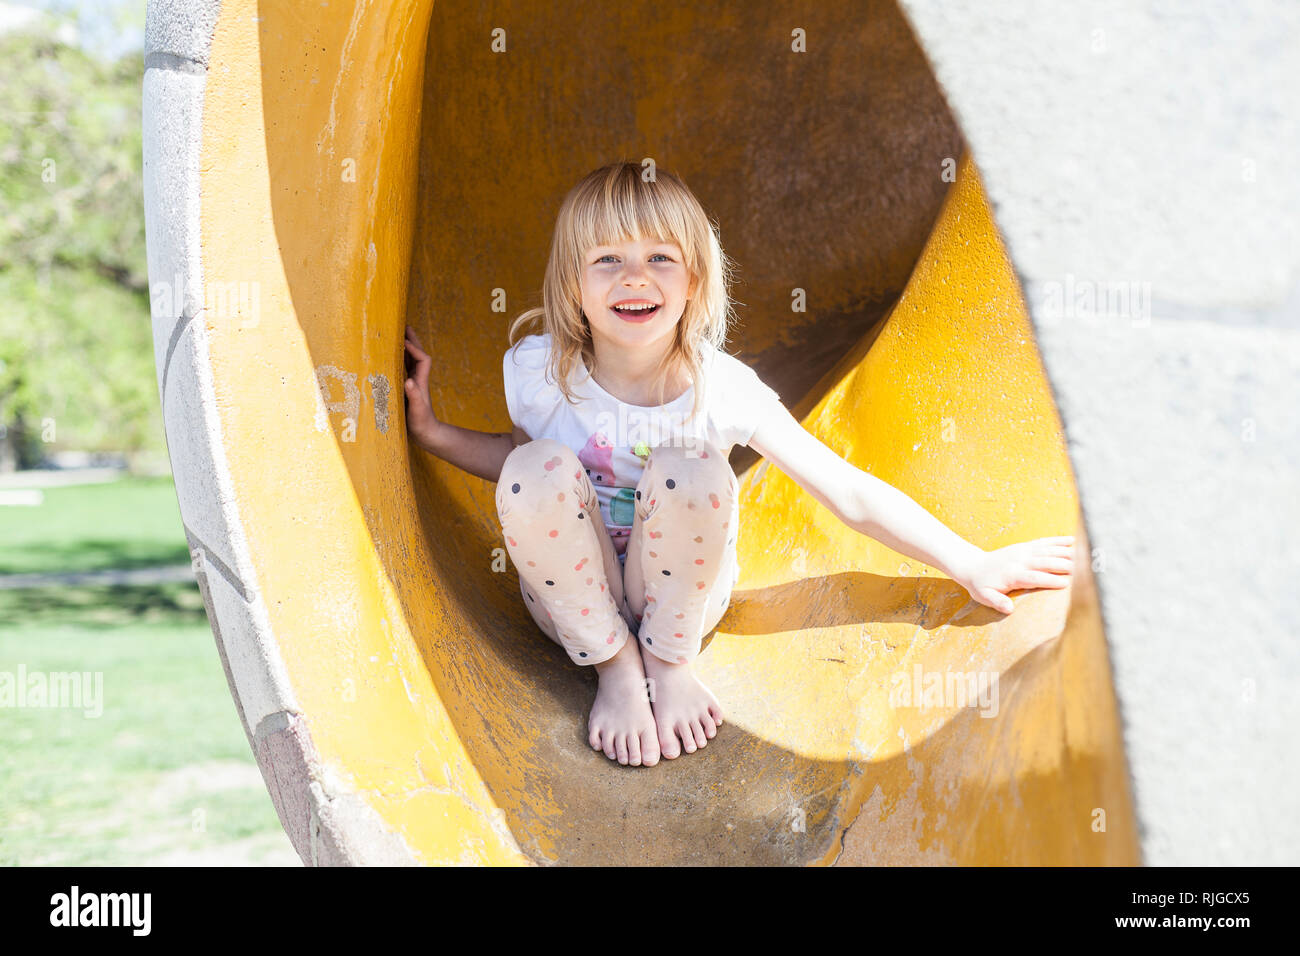 Girl on Slide Stock Photo